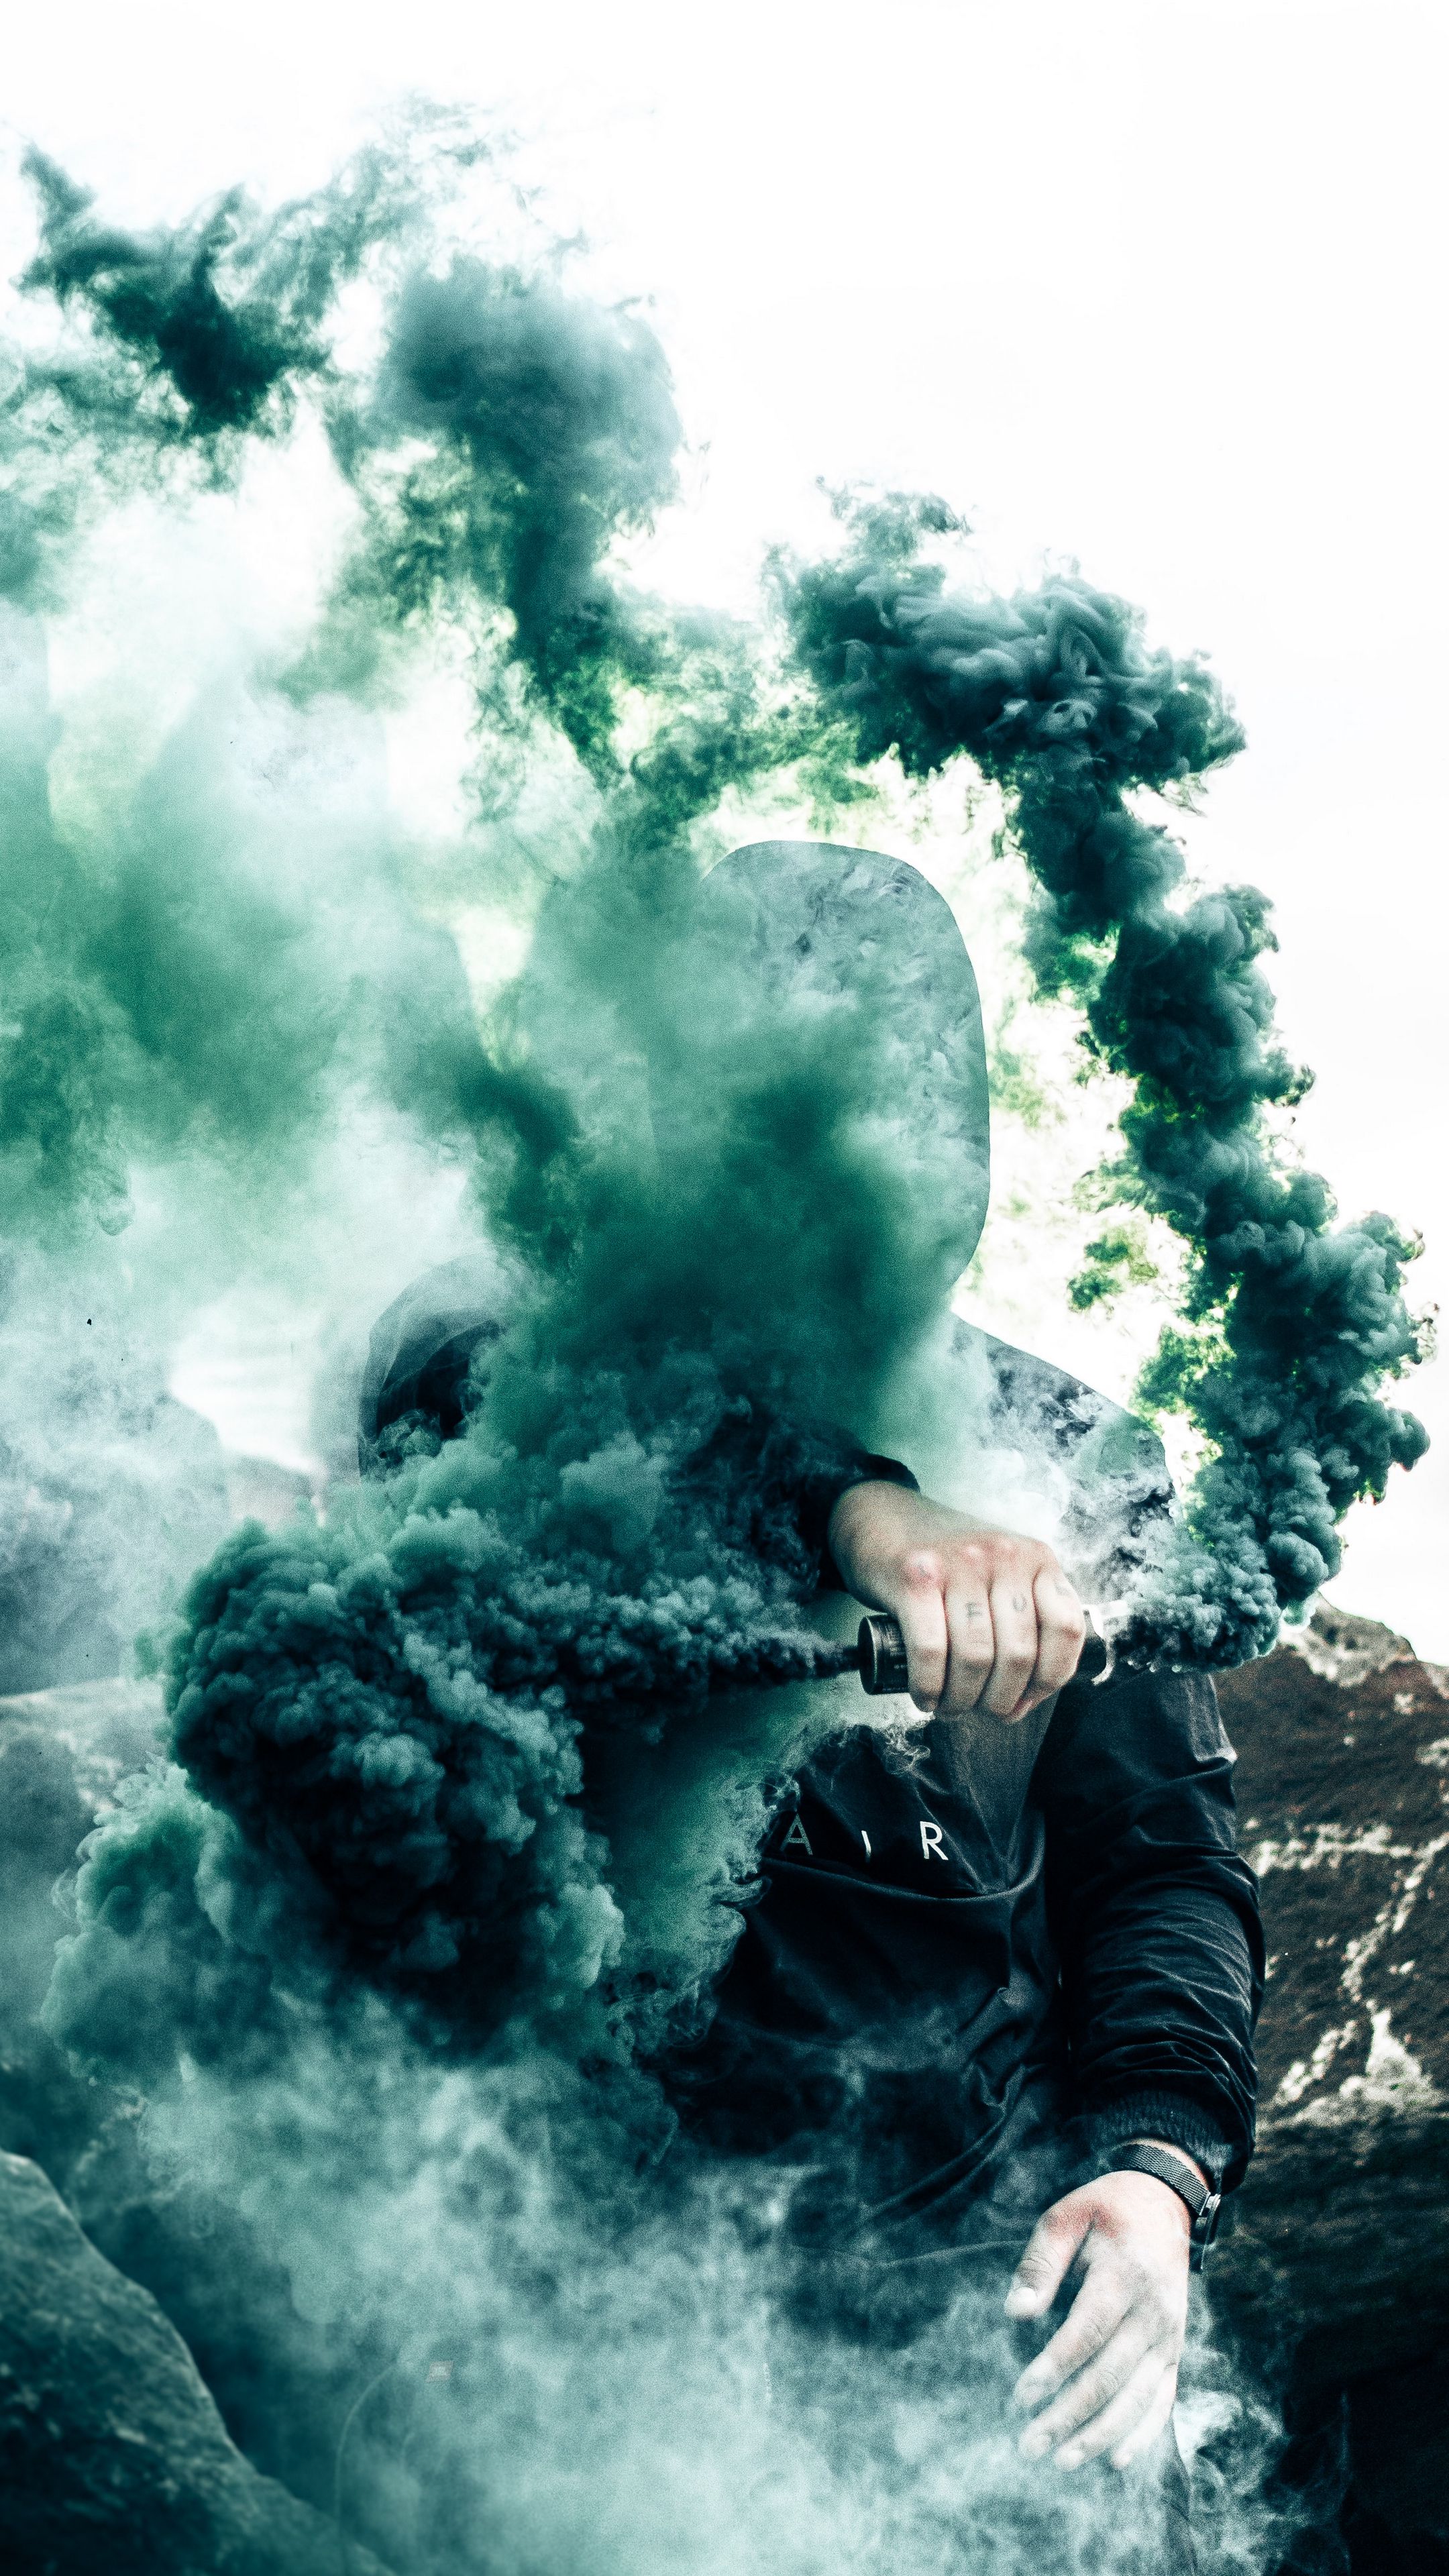 Фото на заставку пацанам. Человек в дыму. Дым. Человек в капюшоне в дыму. Парень в дыму.